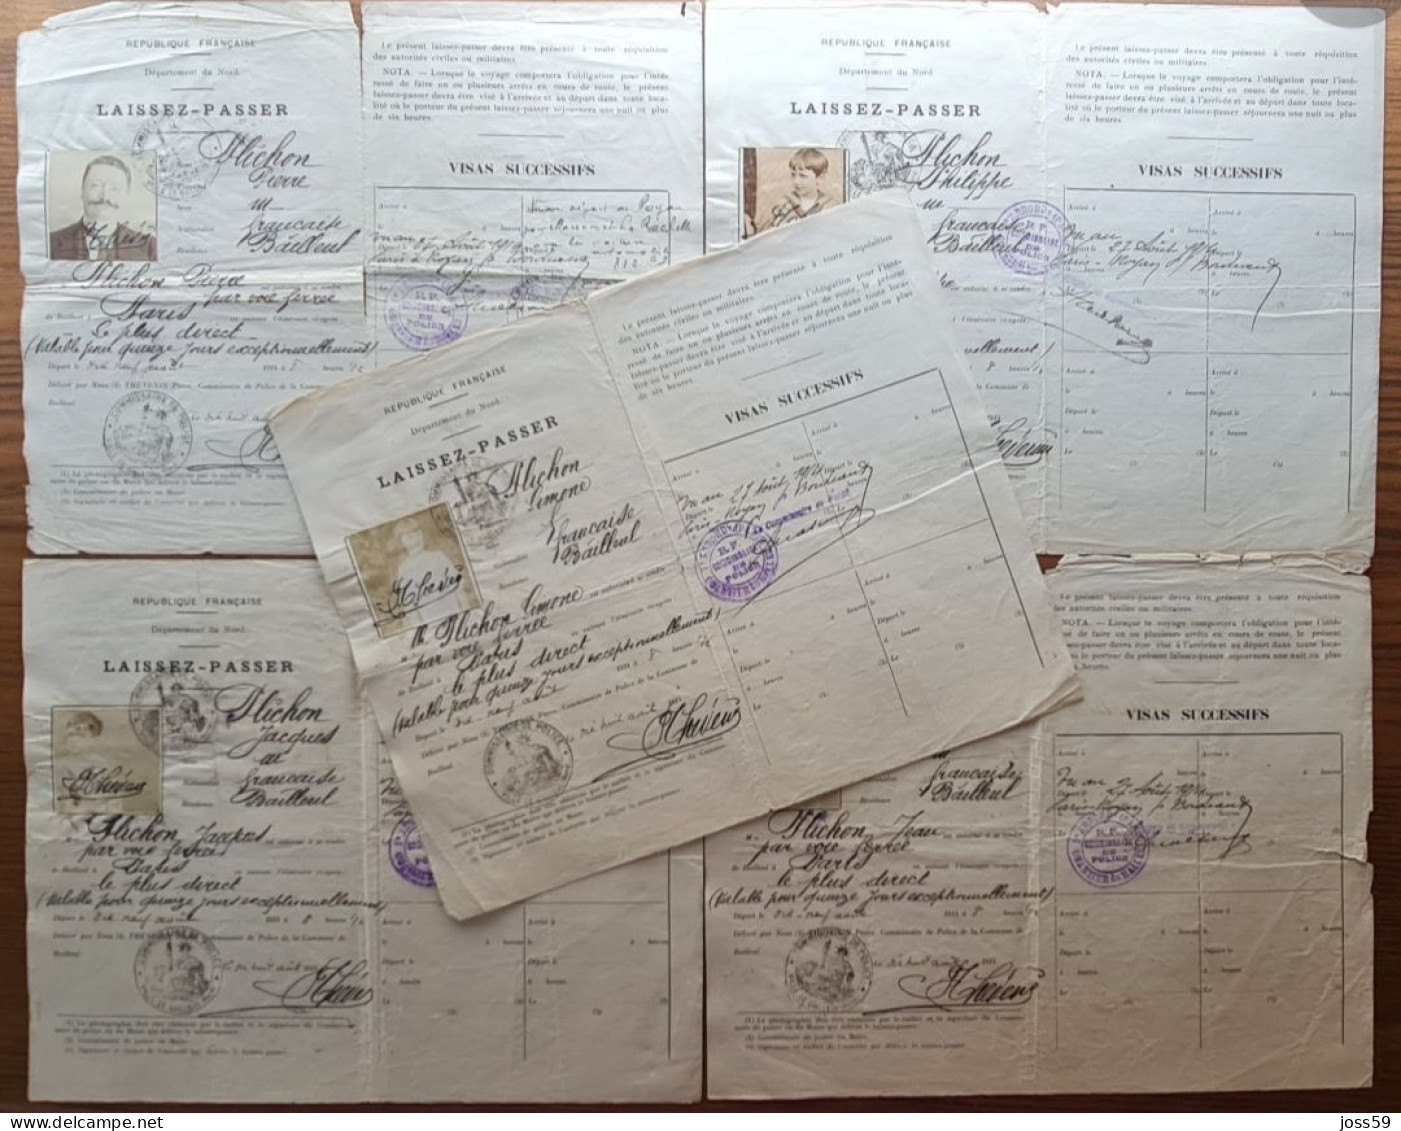 Bailleul -59- NORD -guerre 1914-1918 Famille Plichon 5 Laissez Passer WW1 , WWI - Historische Dokumente